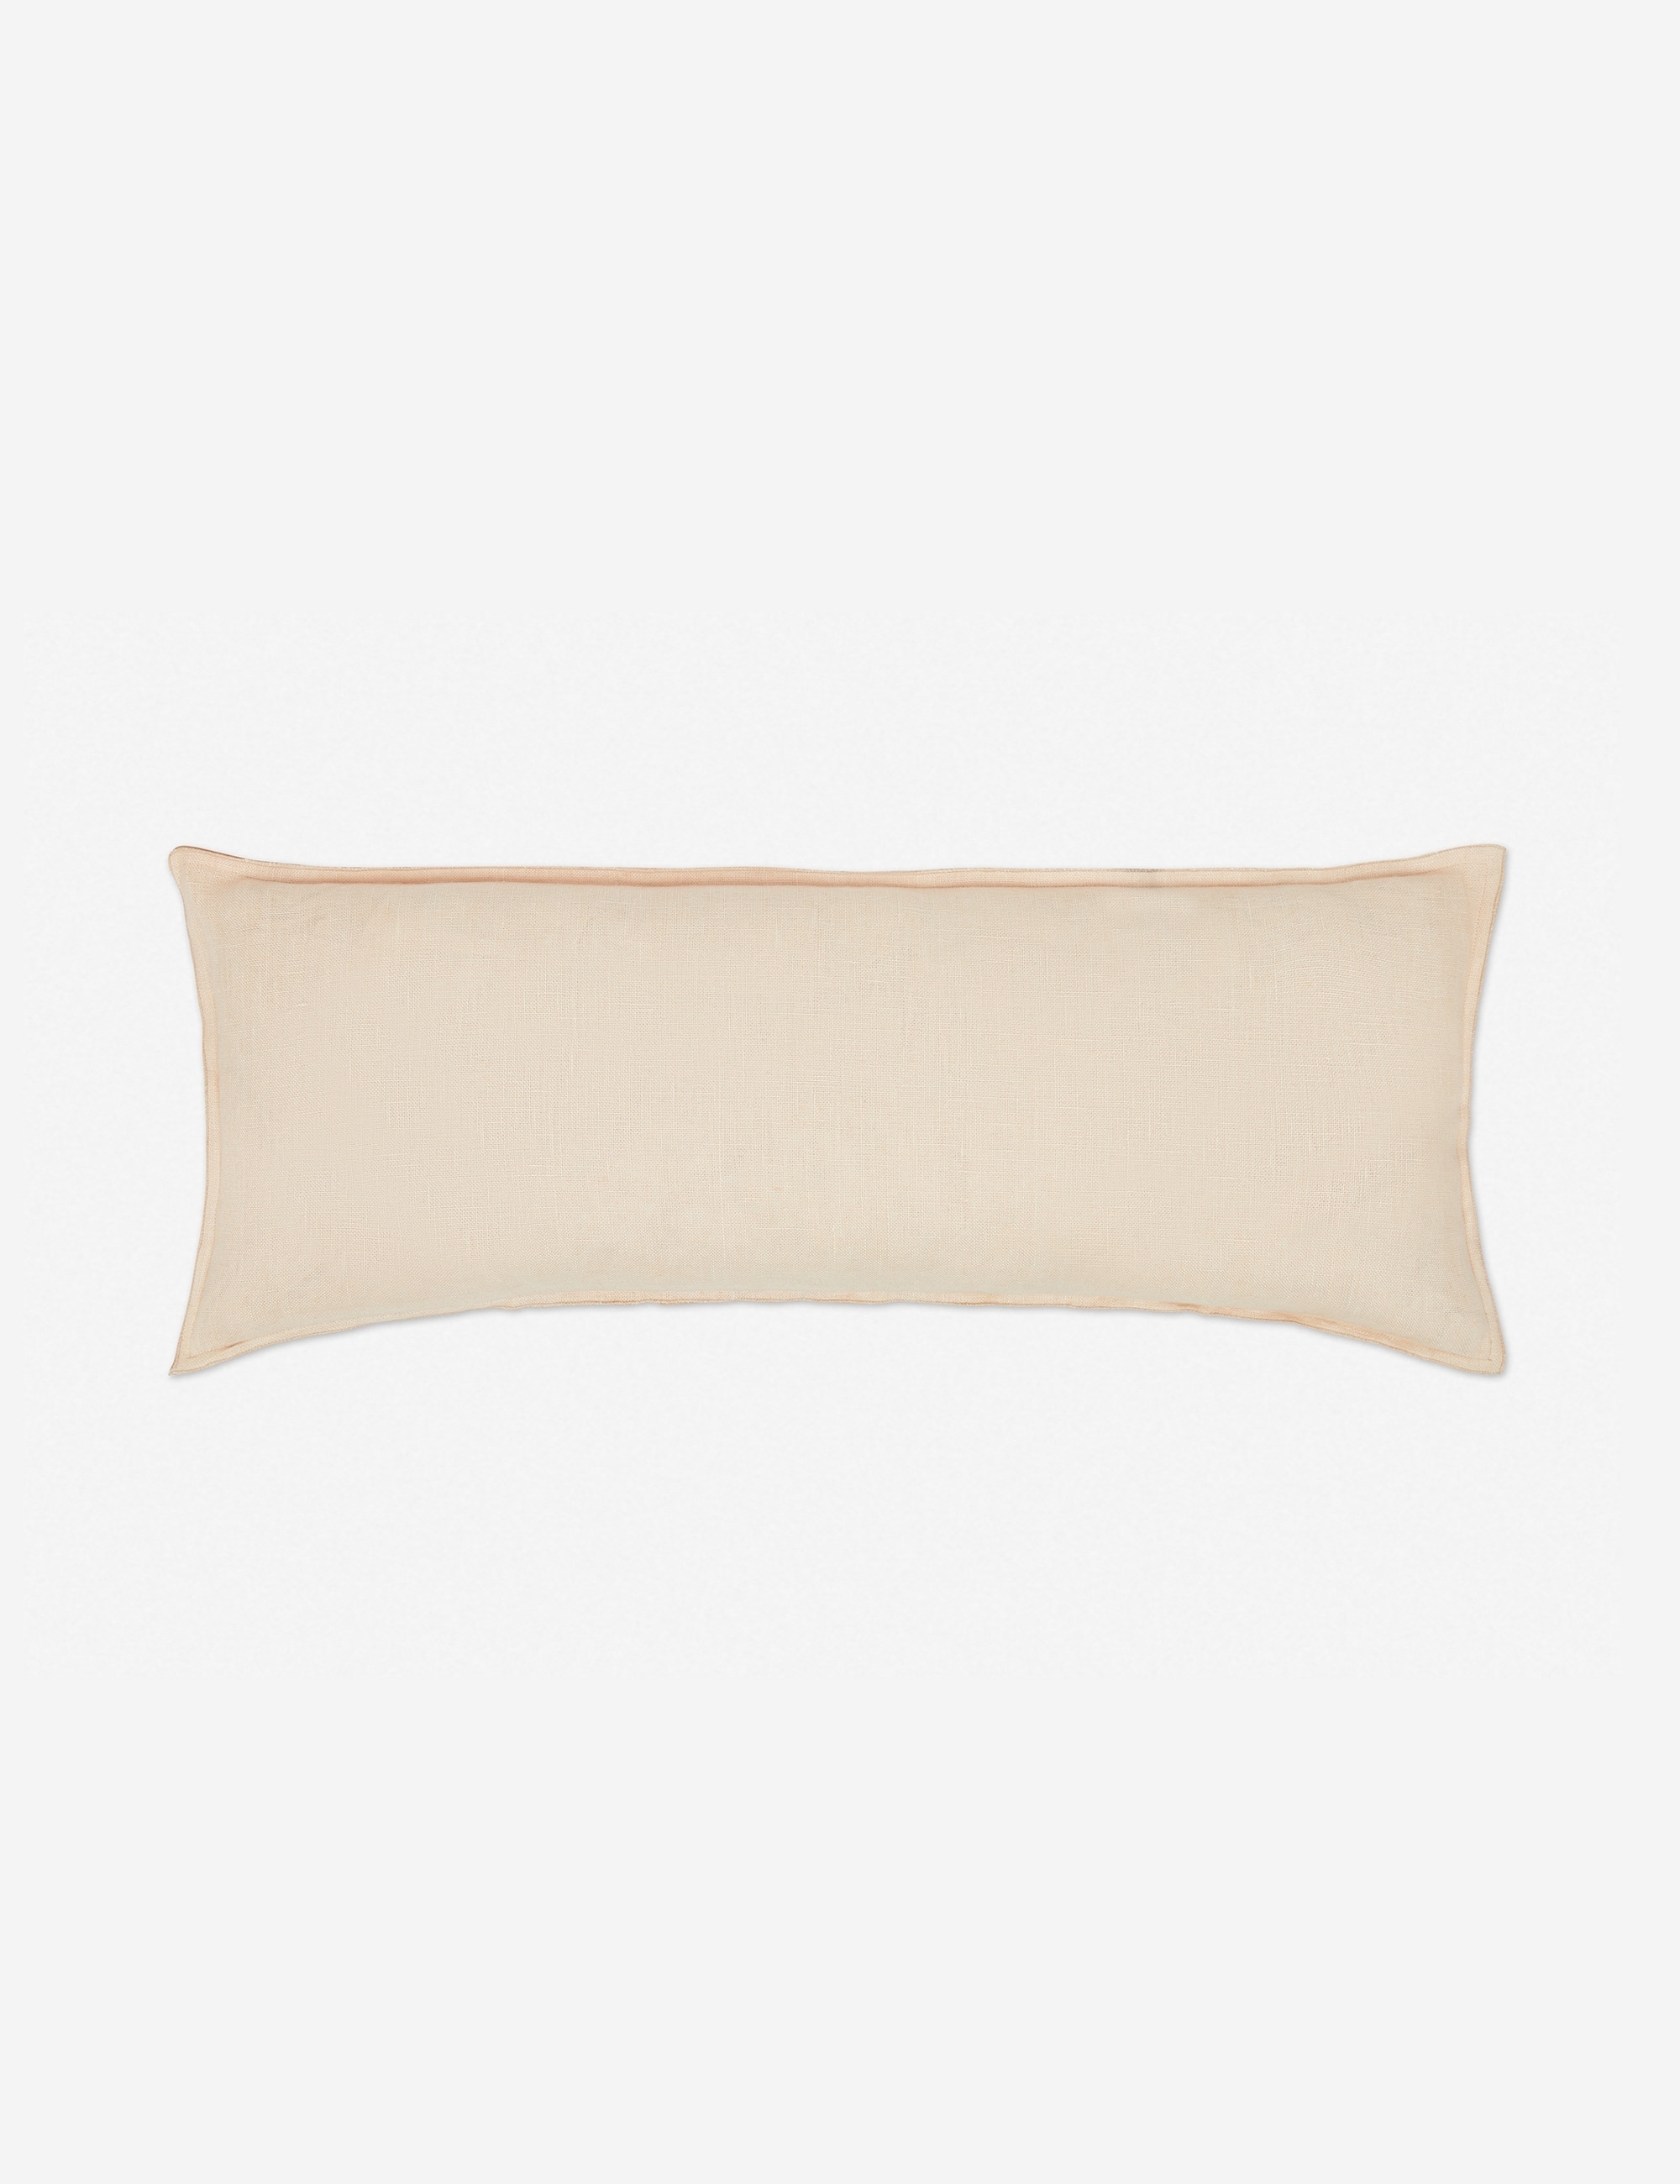 Arlo Linen Long Lumbar Pillow, Blush - Image 2